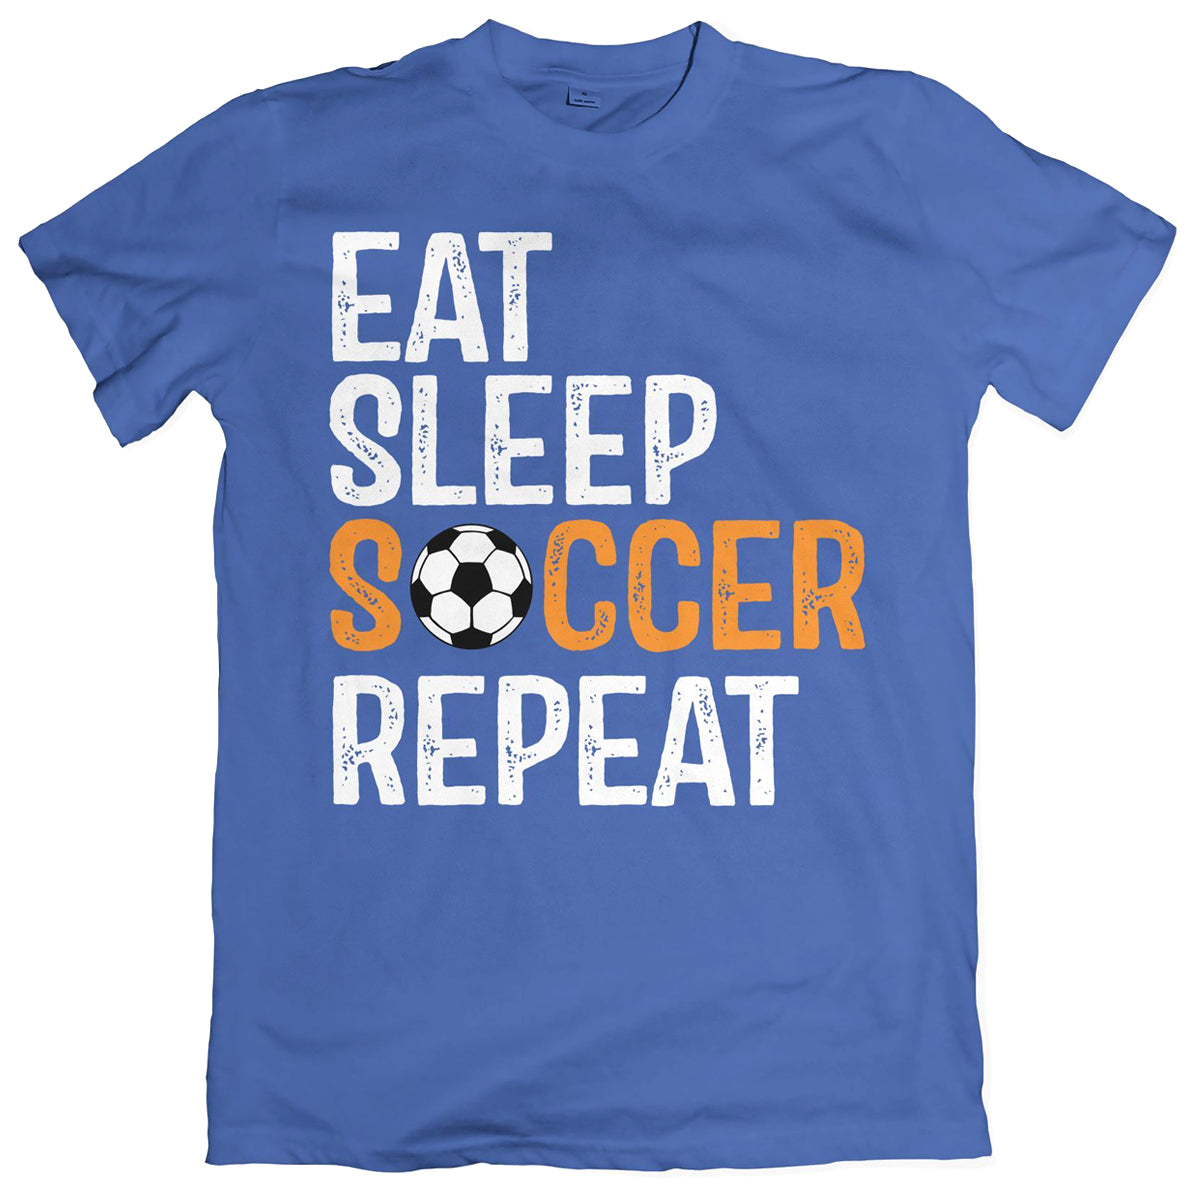 Eat Sleep Soccer Repeat T-Shirt Shirts 411 Youth Small Royal Blue 